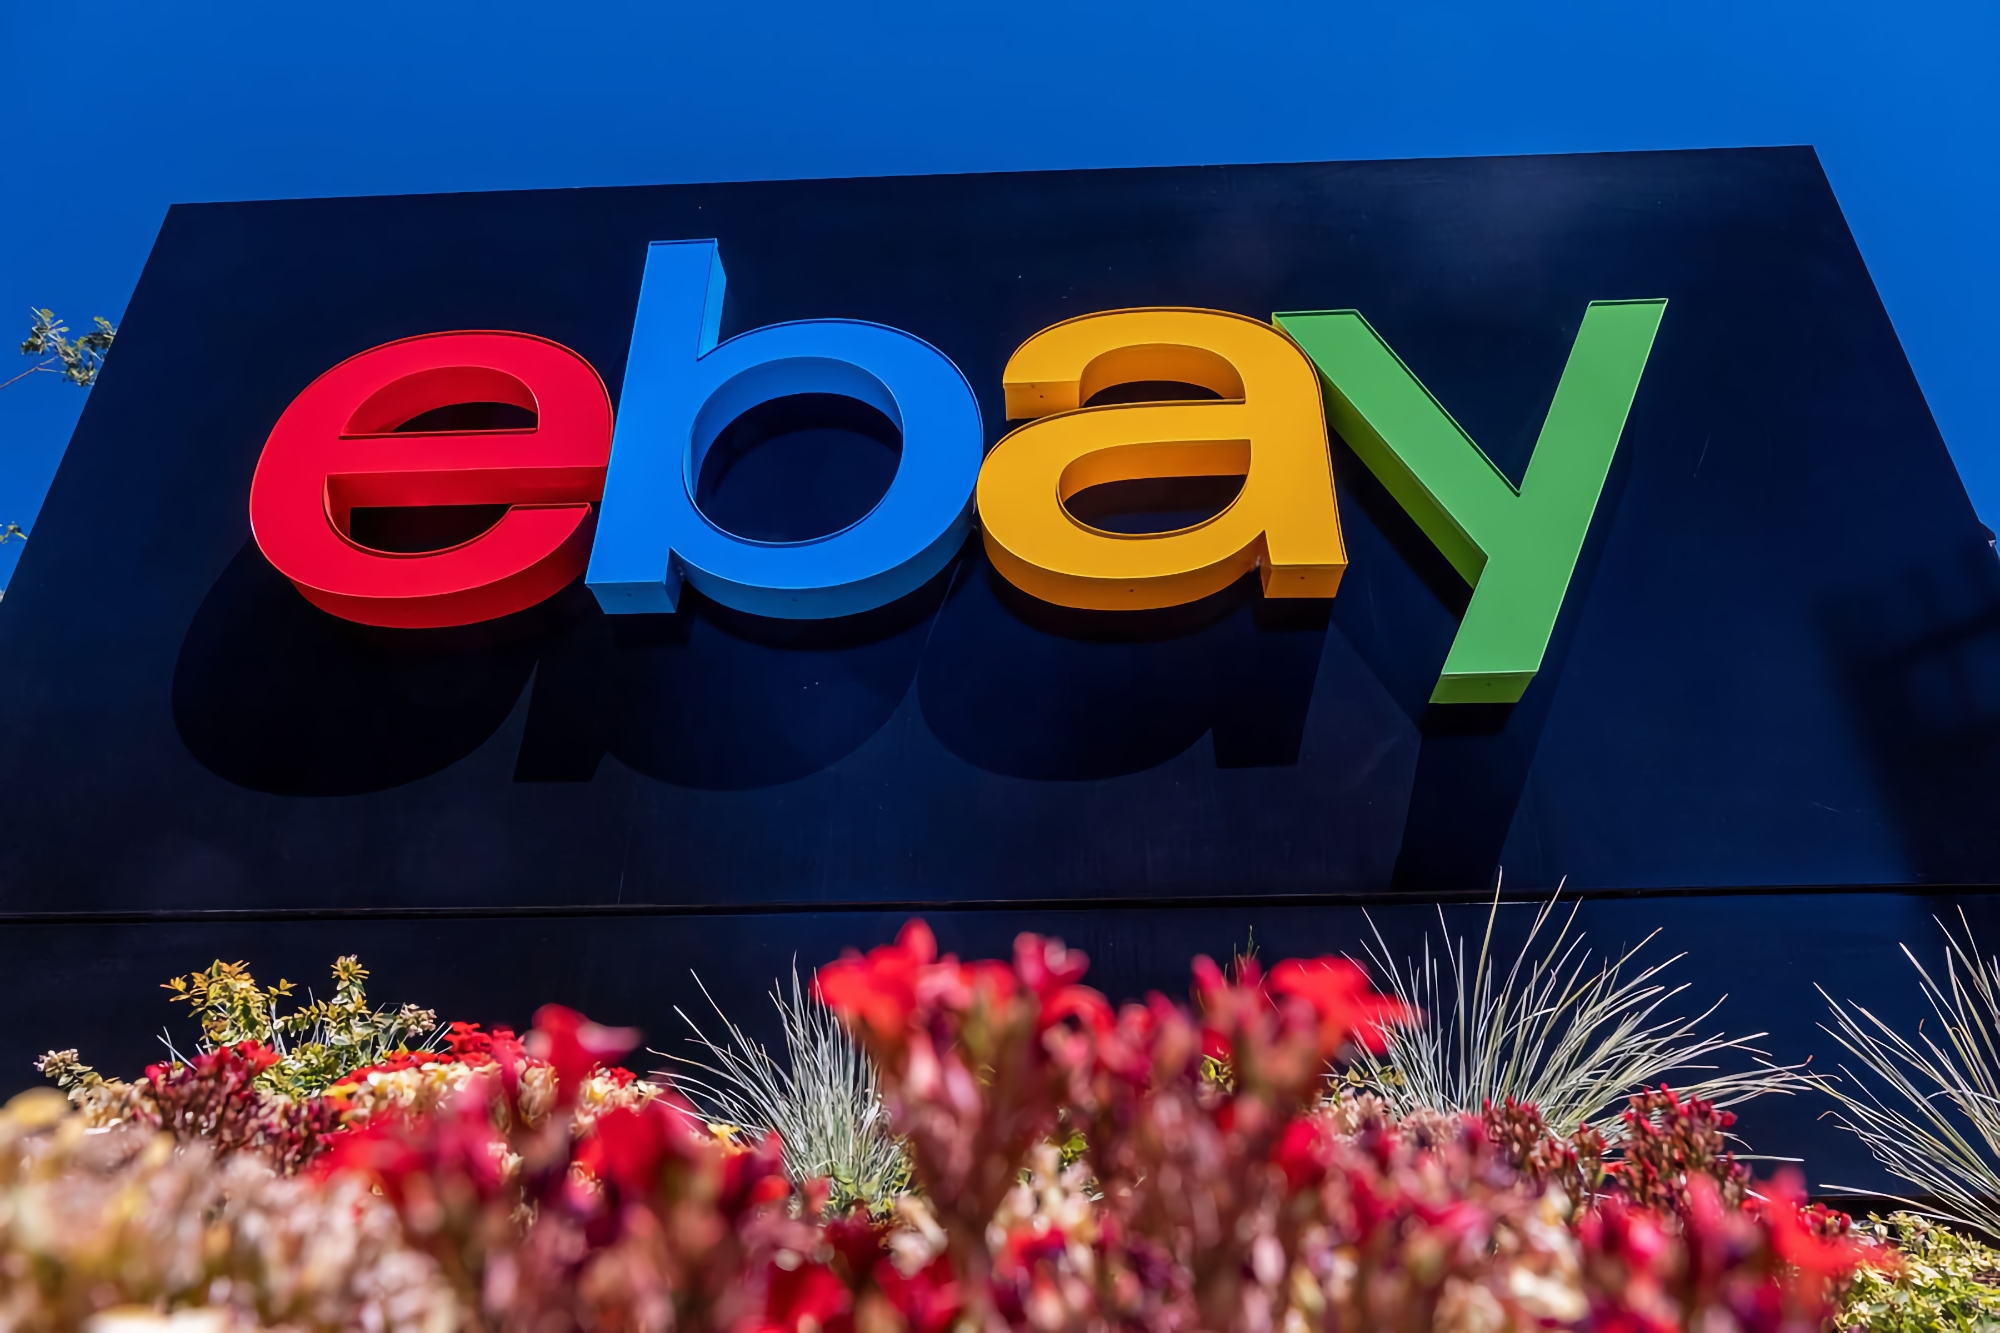 eBay liefert keine Pakete mehr nach Russland